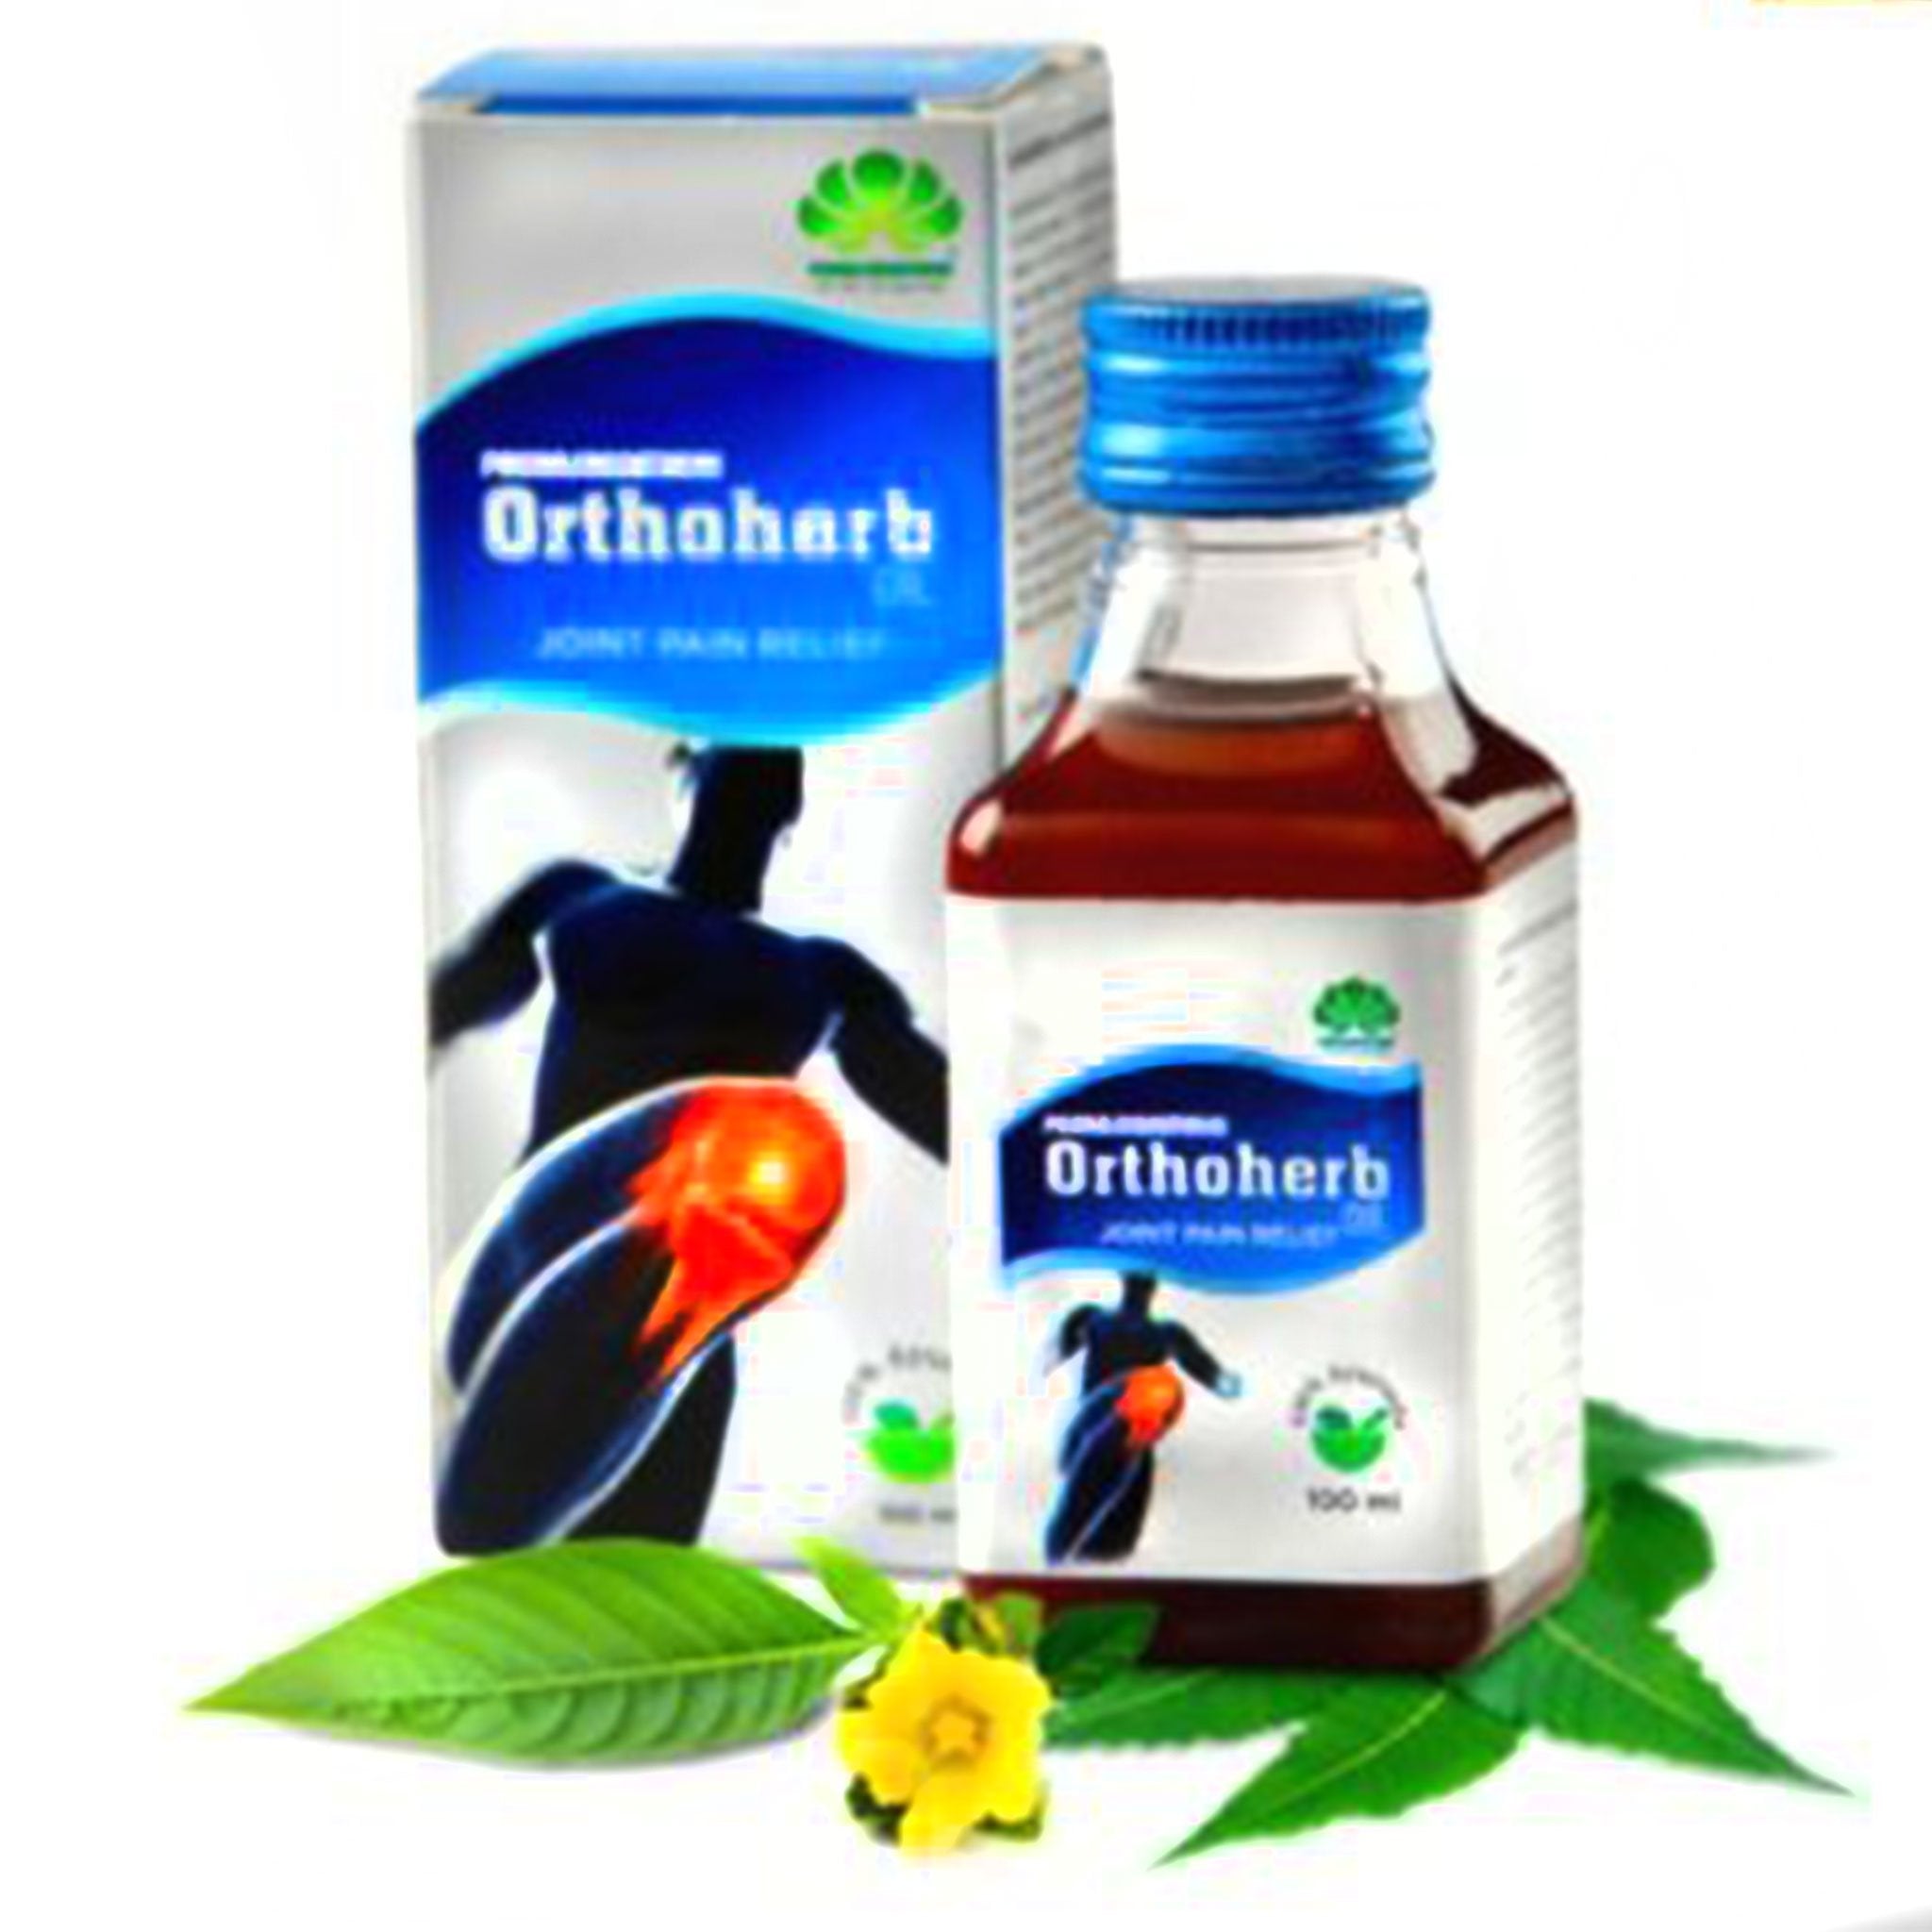 Pankajakasthuri Orthoherb Oil 100ml Value Pack of 4 